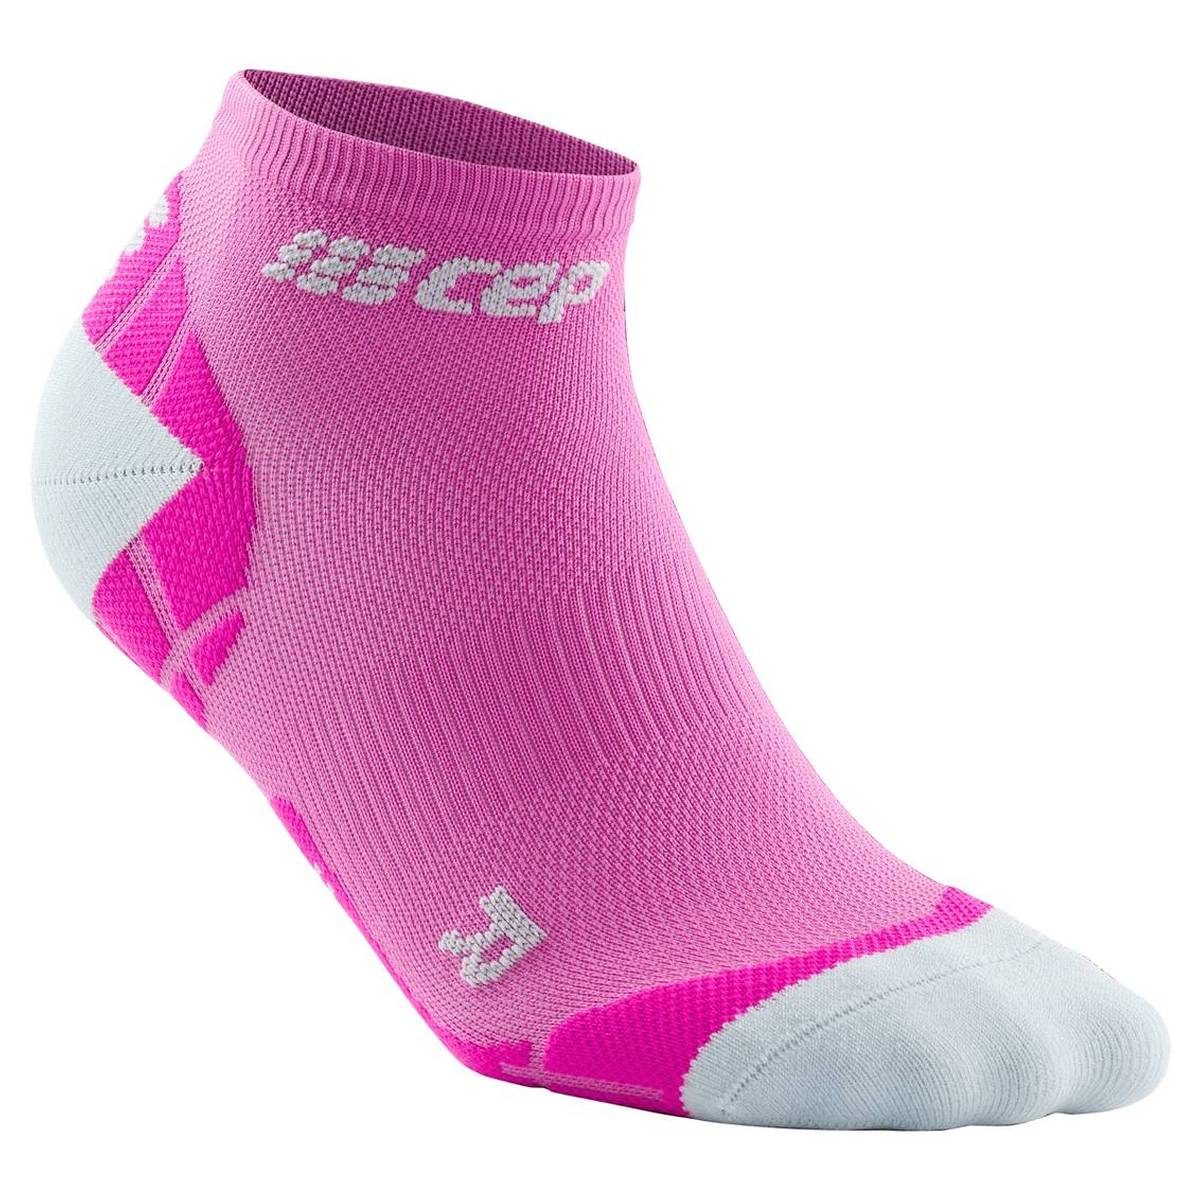 CEP ULTRALIGHT LOW CUT Socks Damen Laufsocke pink Gr. 34-37 von CEP